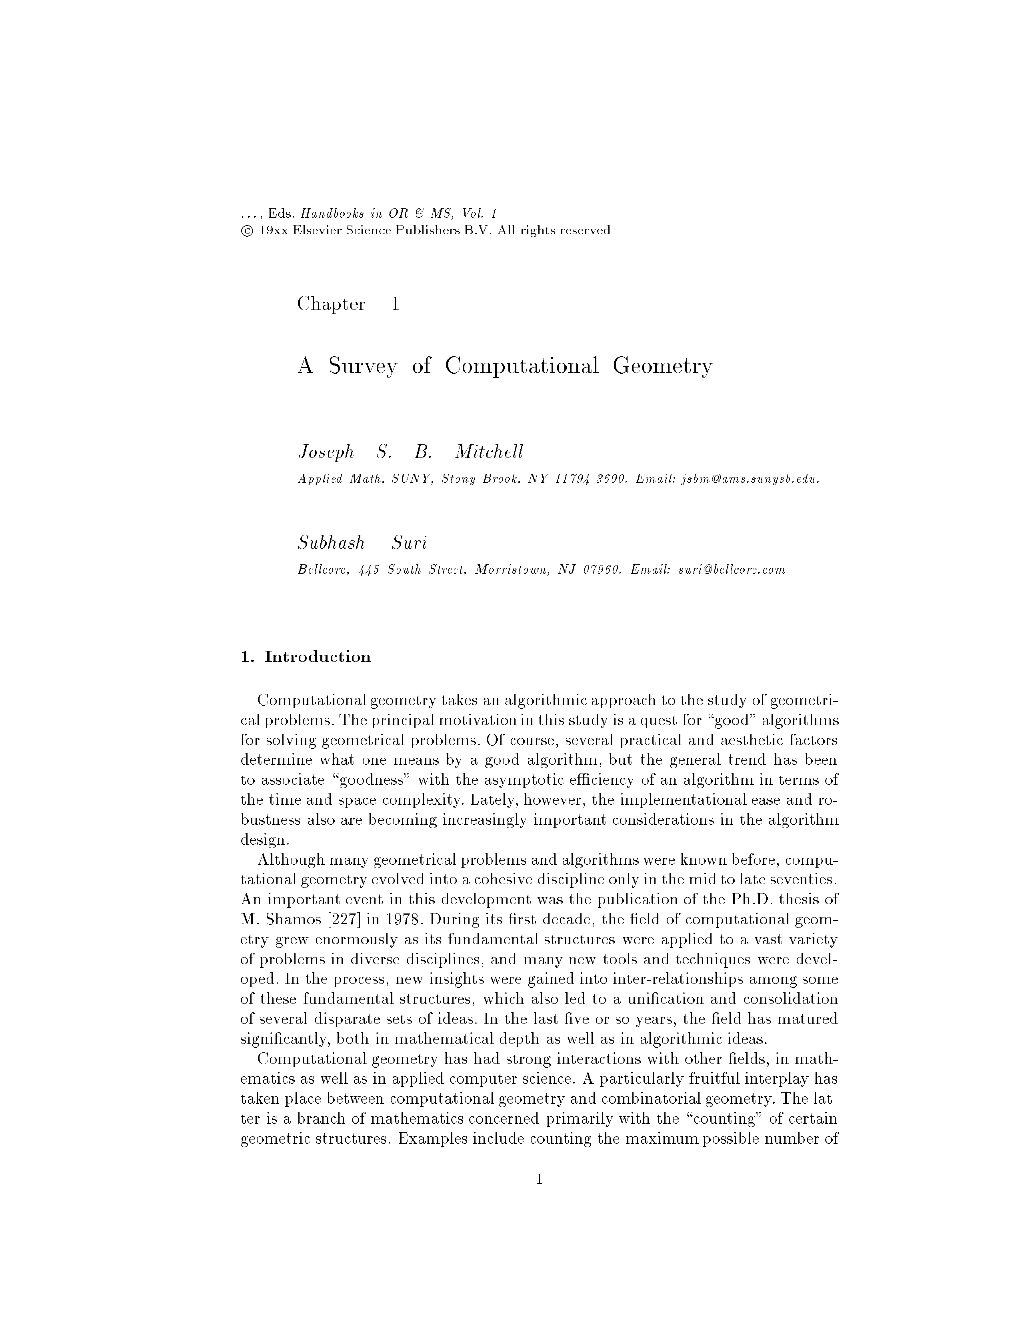 A Survey of Computational Geometry